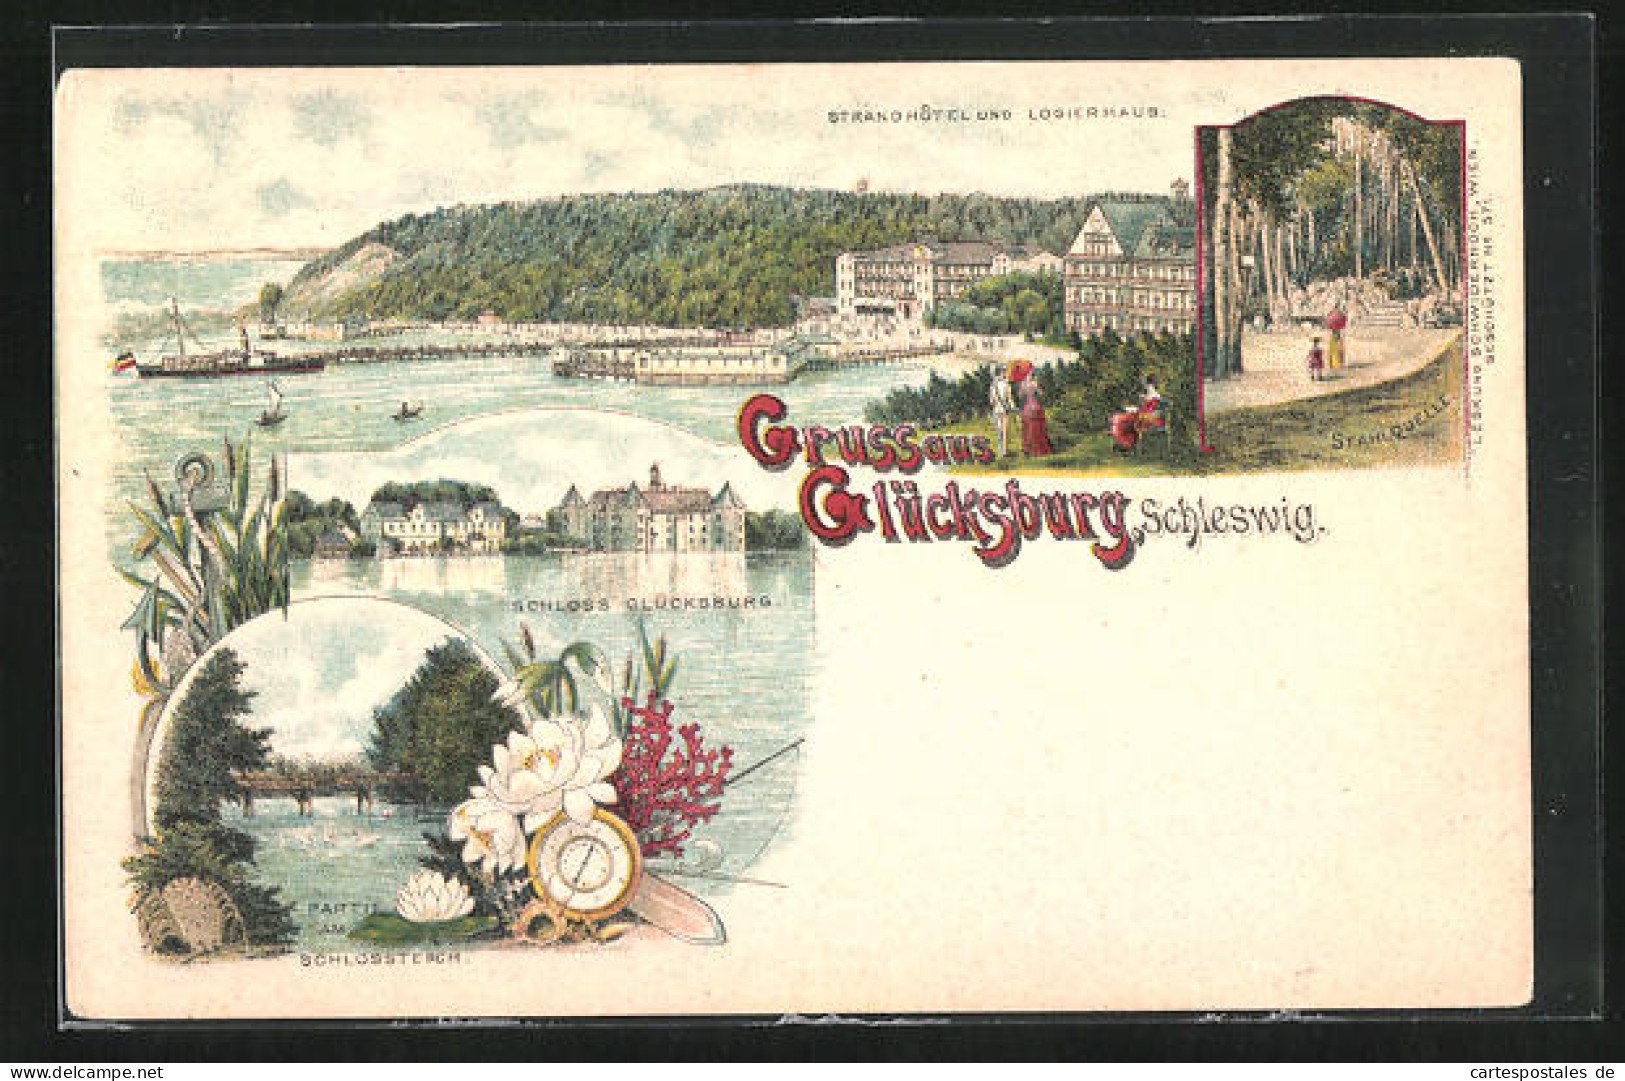 Lithographie Glücksburg /Schleswig, Strandhôtel Und Logierhaus Mit Dampfer, Stahlquelle, Partie Am Schlossteich  - Schleswig